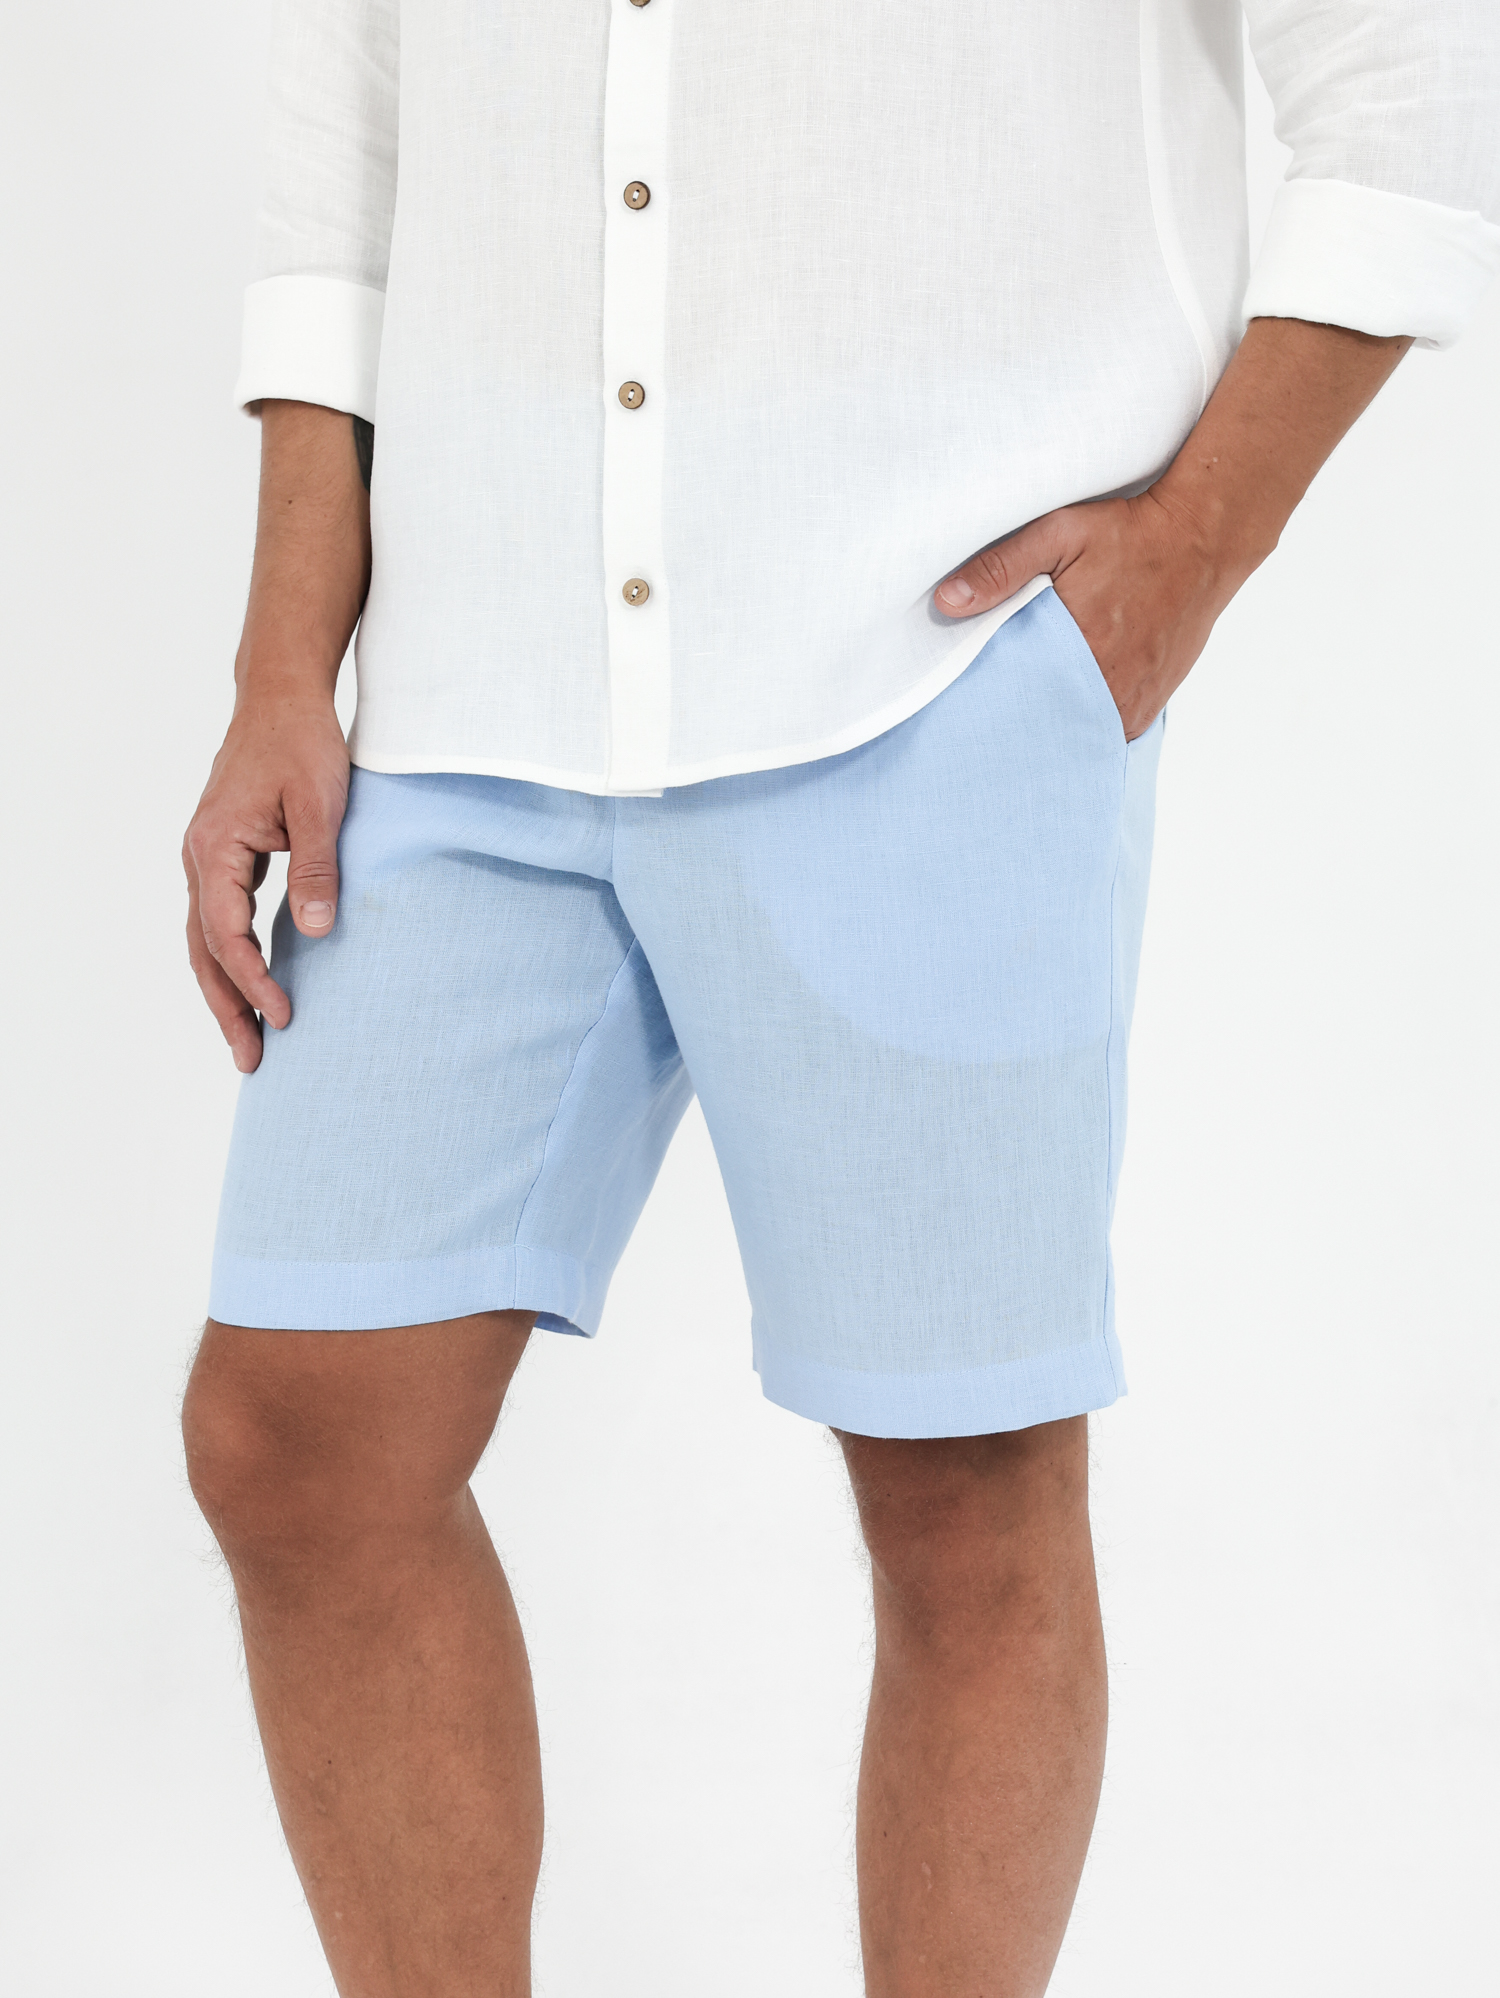 Men's shorts made of linen